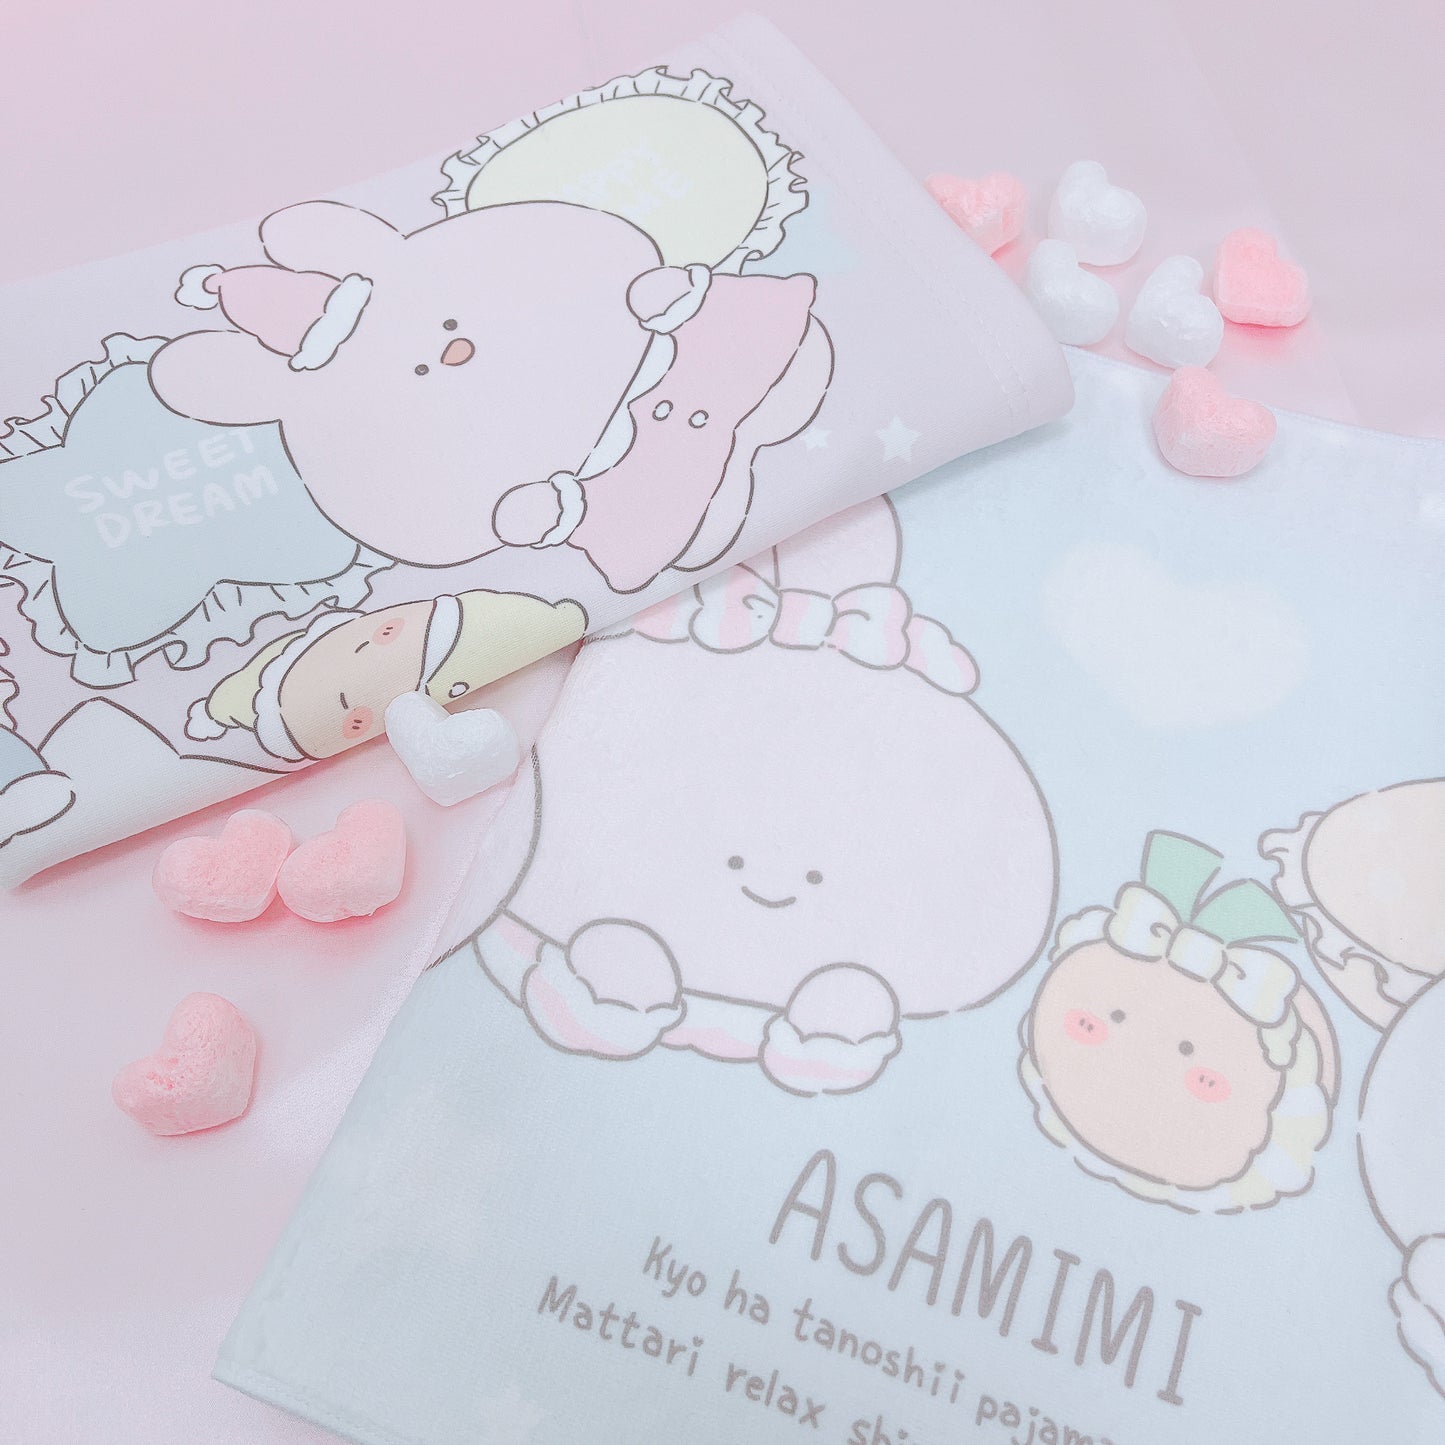 [Asamimi-chan] Asciugamano per il viso (pigiama party)